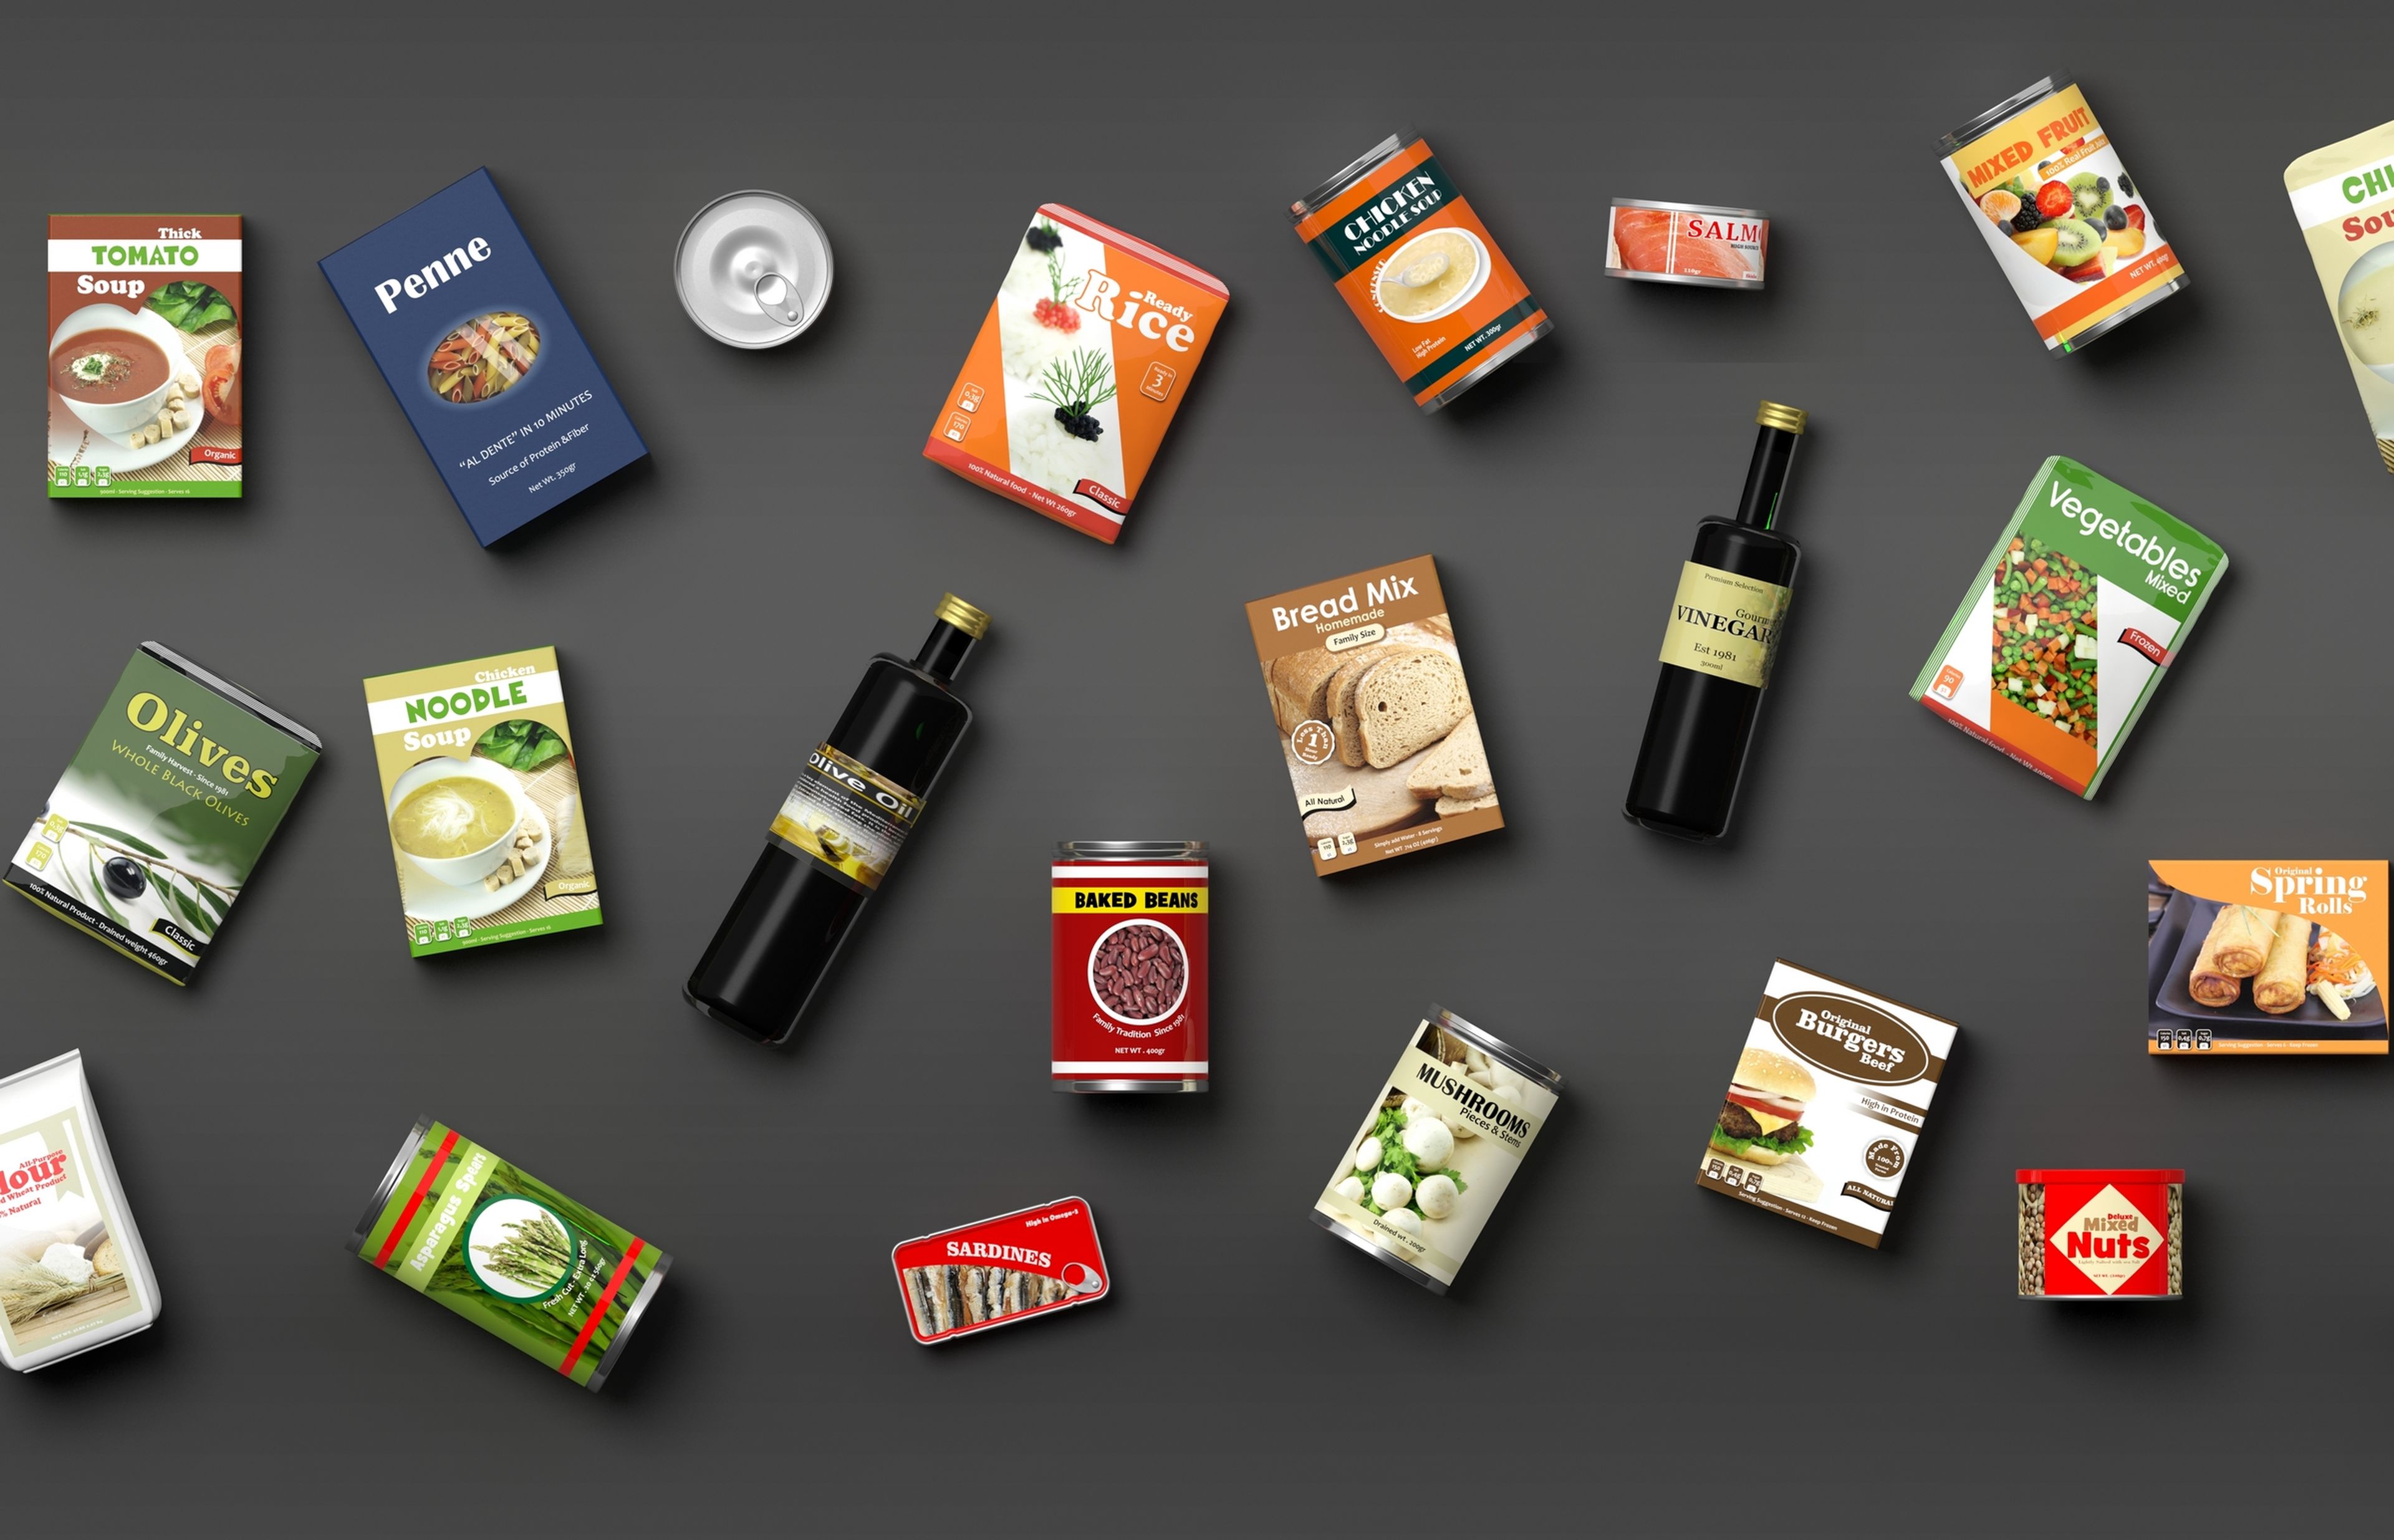 Los giros del lenguaje y trucos de las etiquetas nutricionales para hacernos creer que un producto es sano